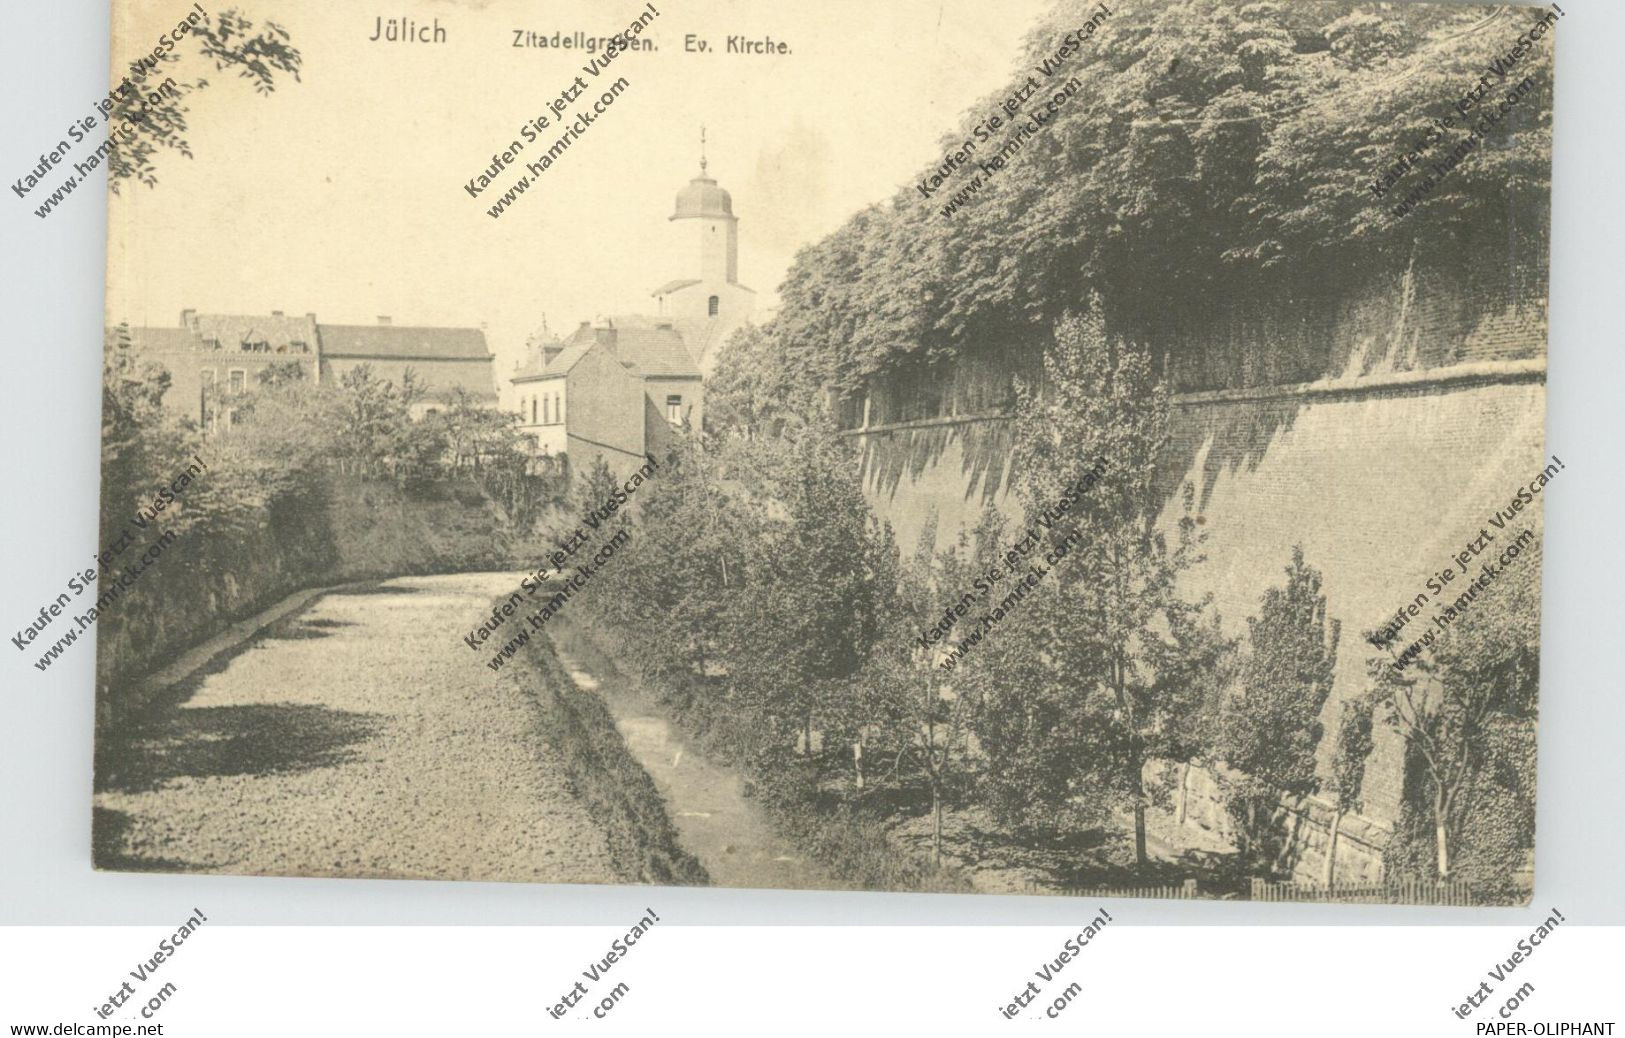 5170 JÜLICH, Zitadellengraben, Ev. Kirche, 1919 - Juelich